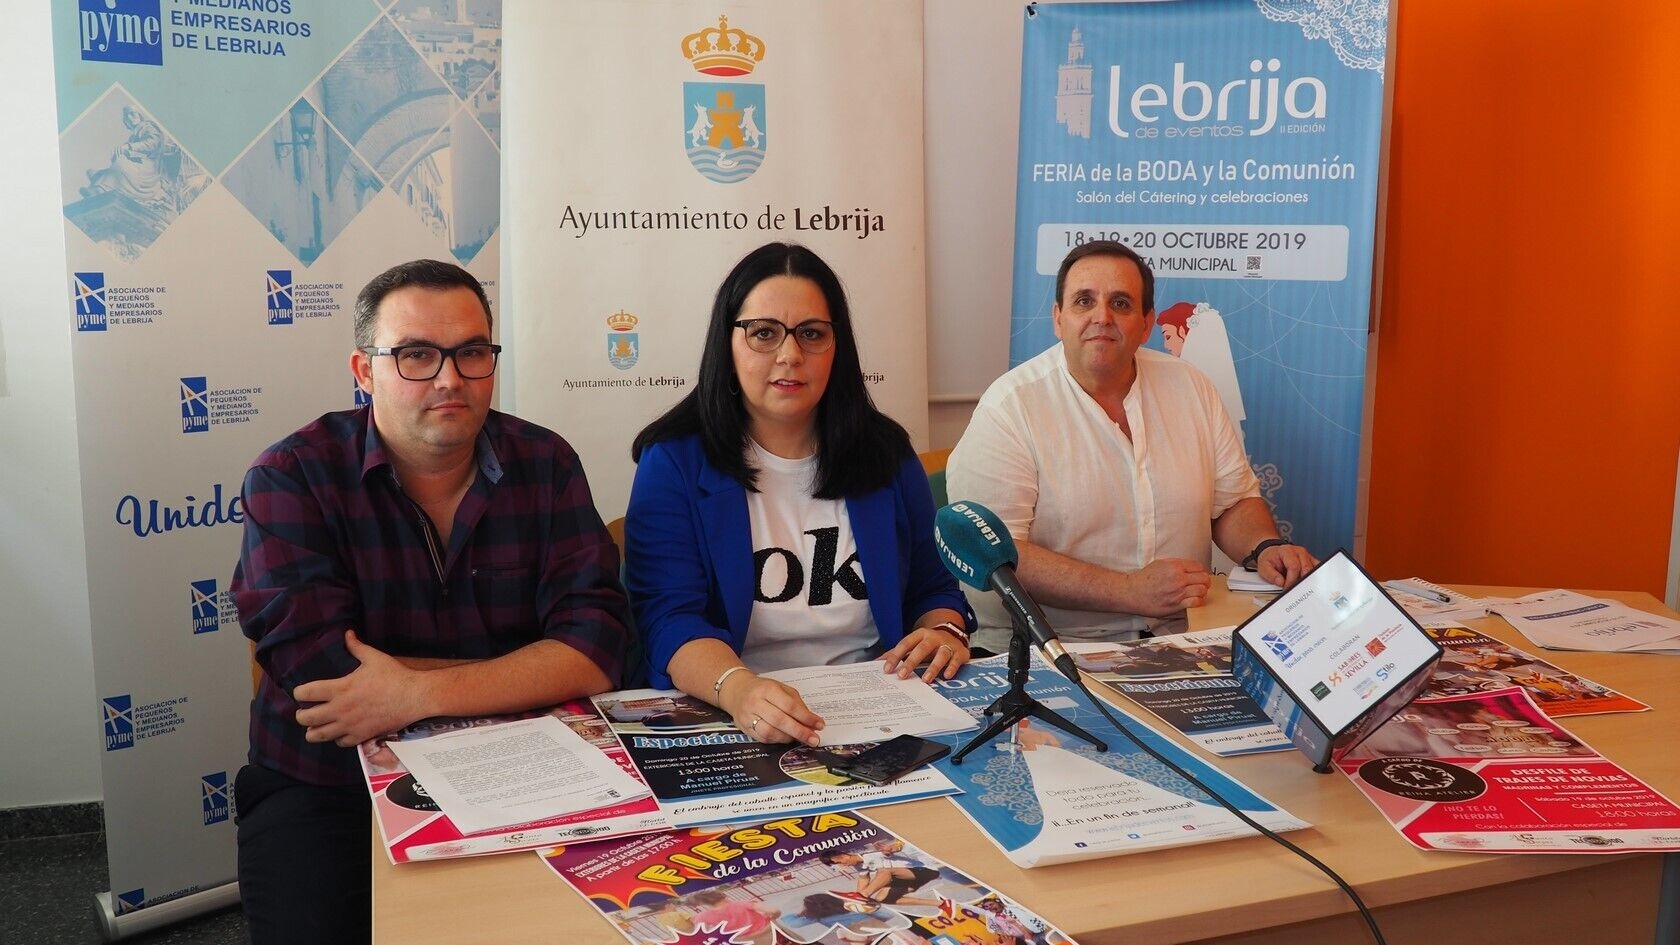 Presentación actividades Feria Eventos Lebrija 2019 (2)